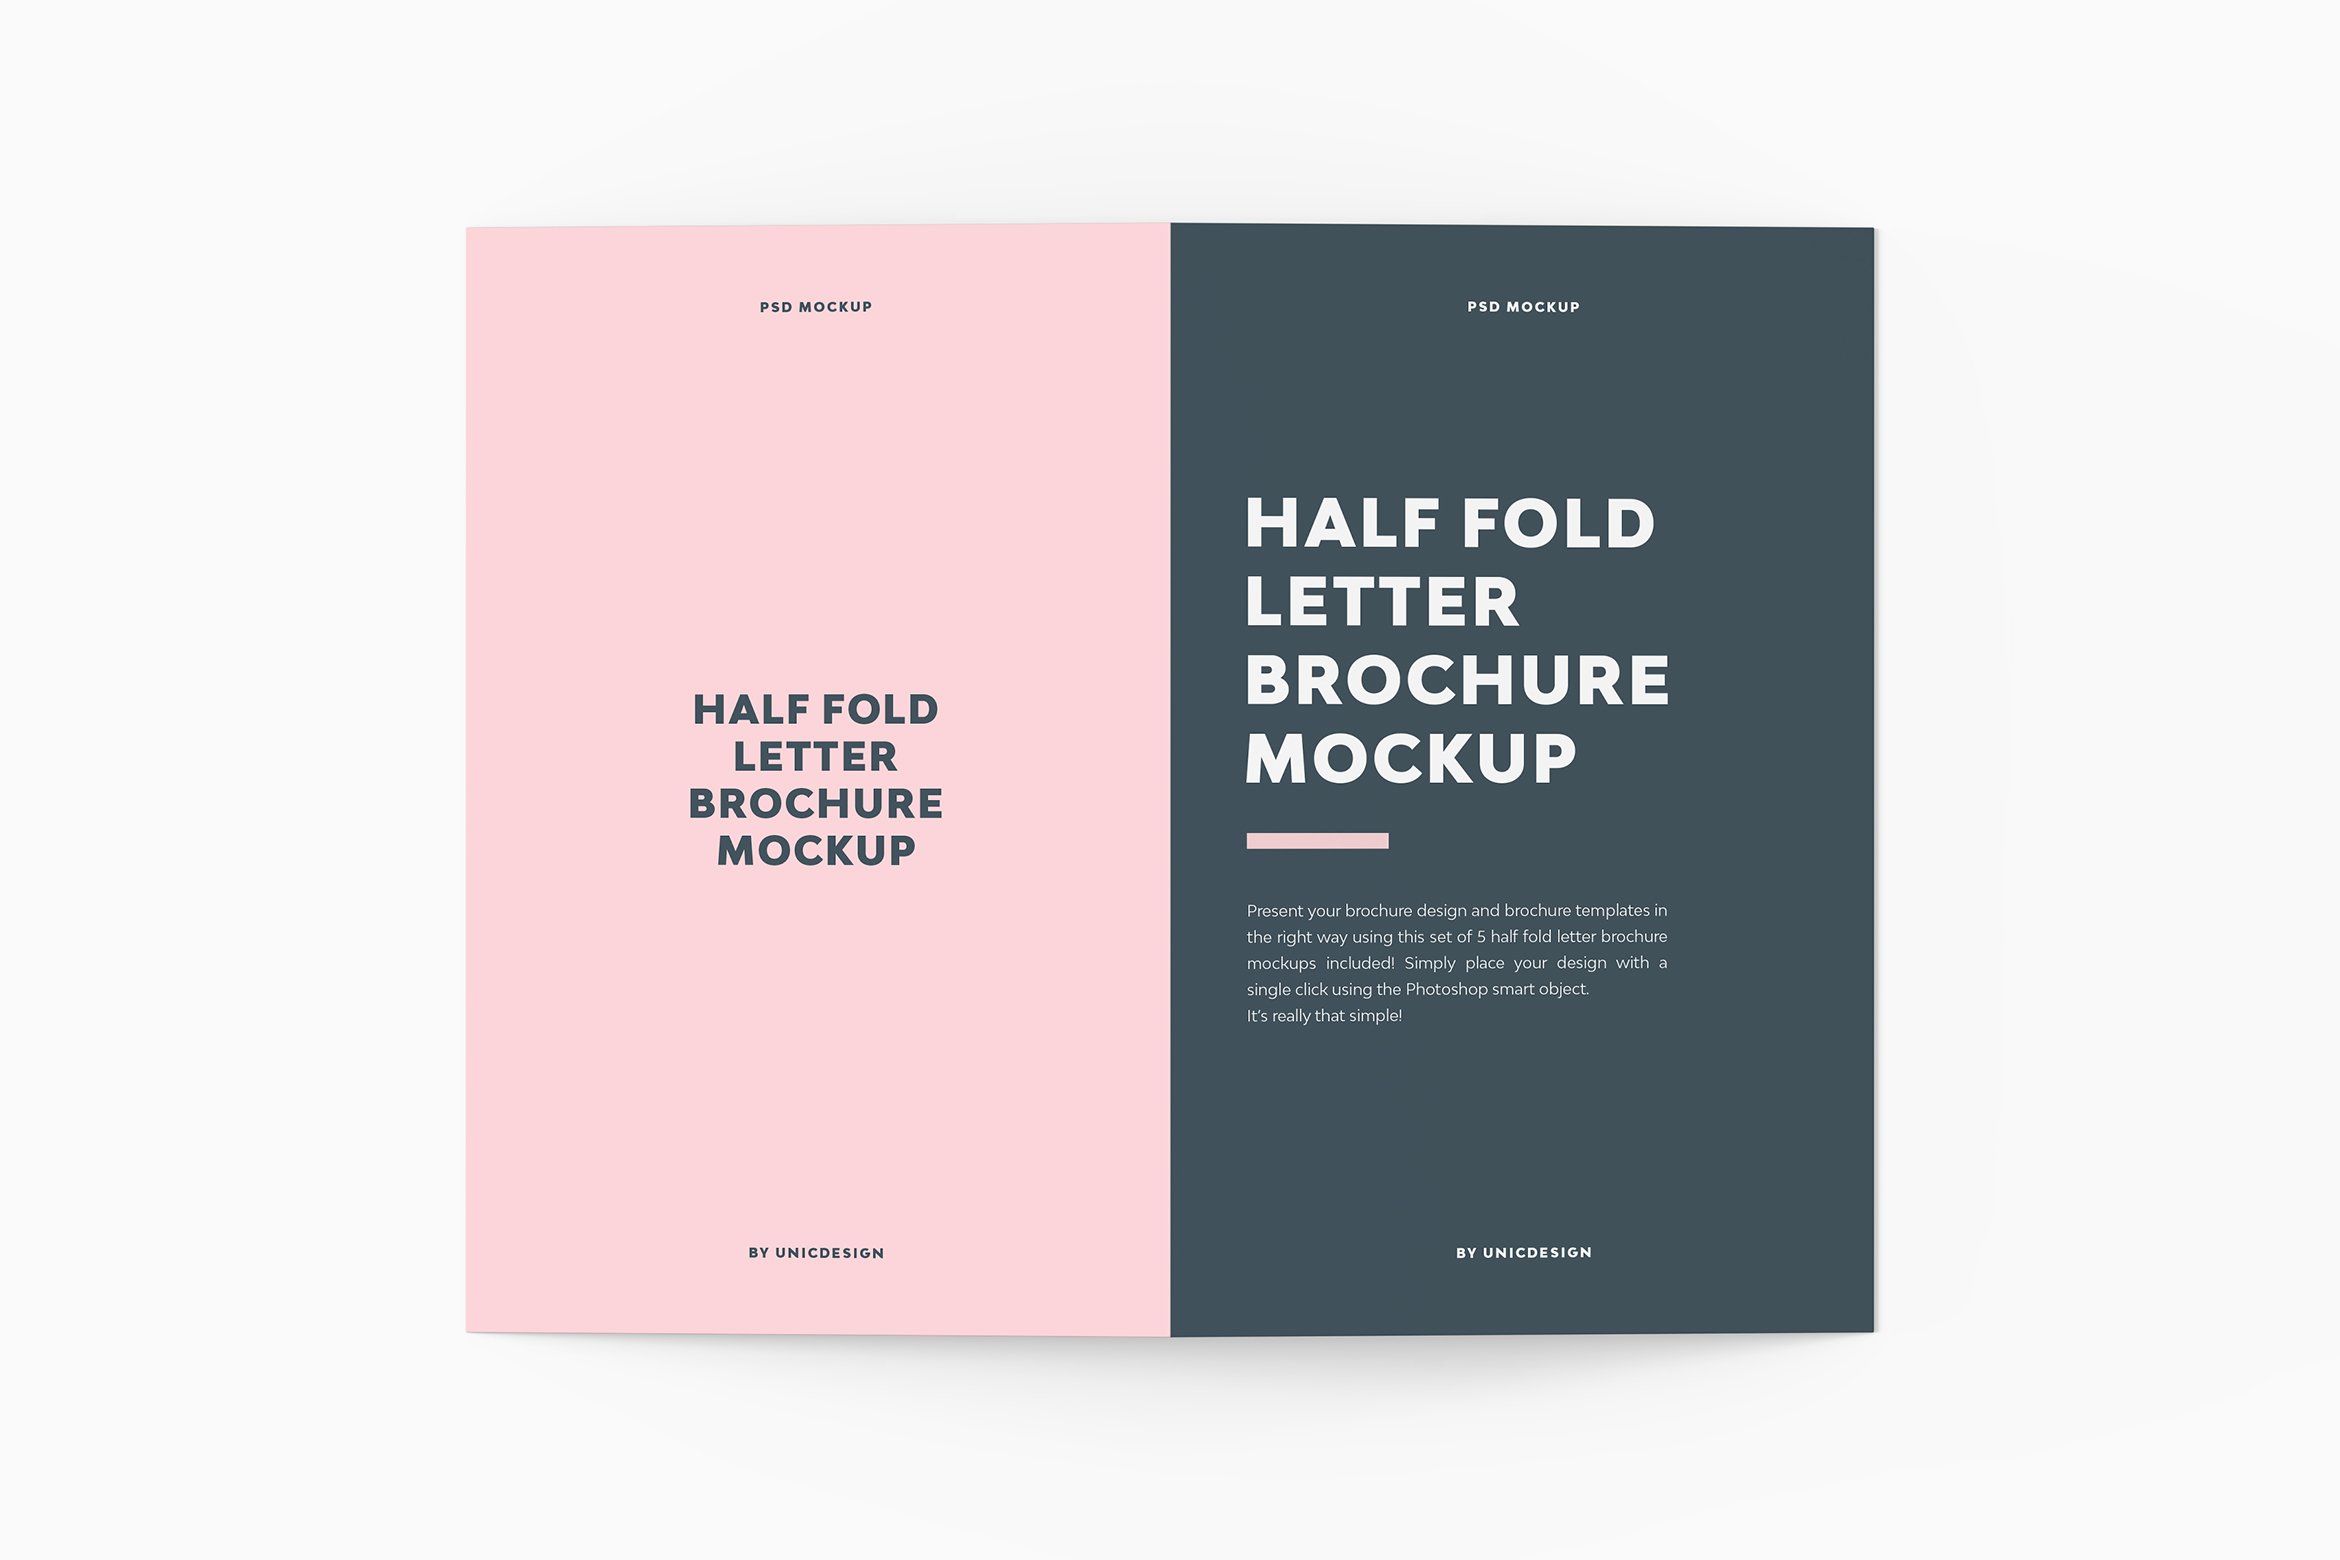 Half Fold Letter Brochure Mockup cover image.